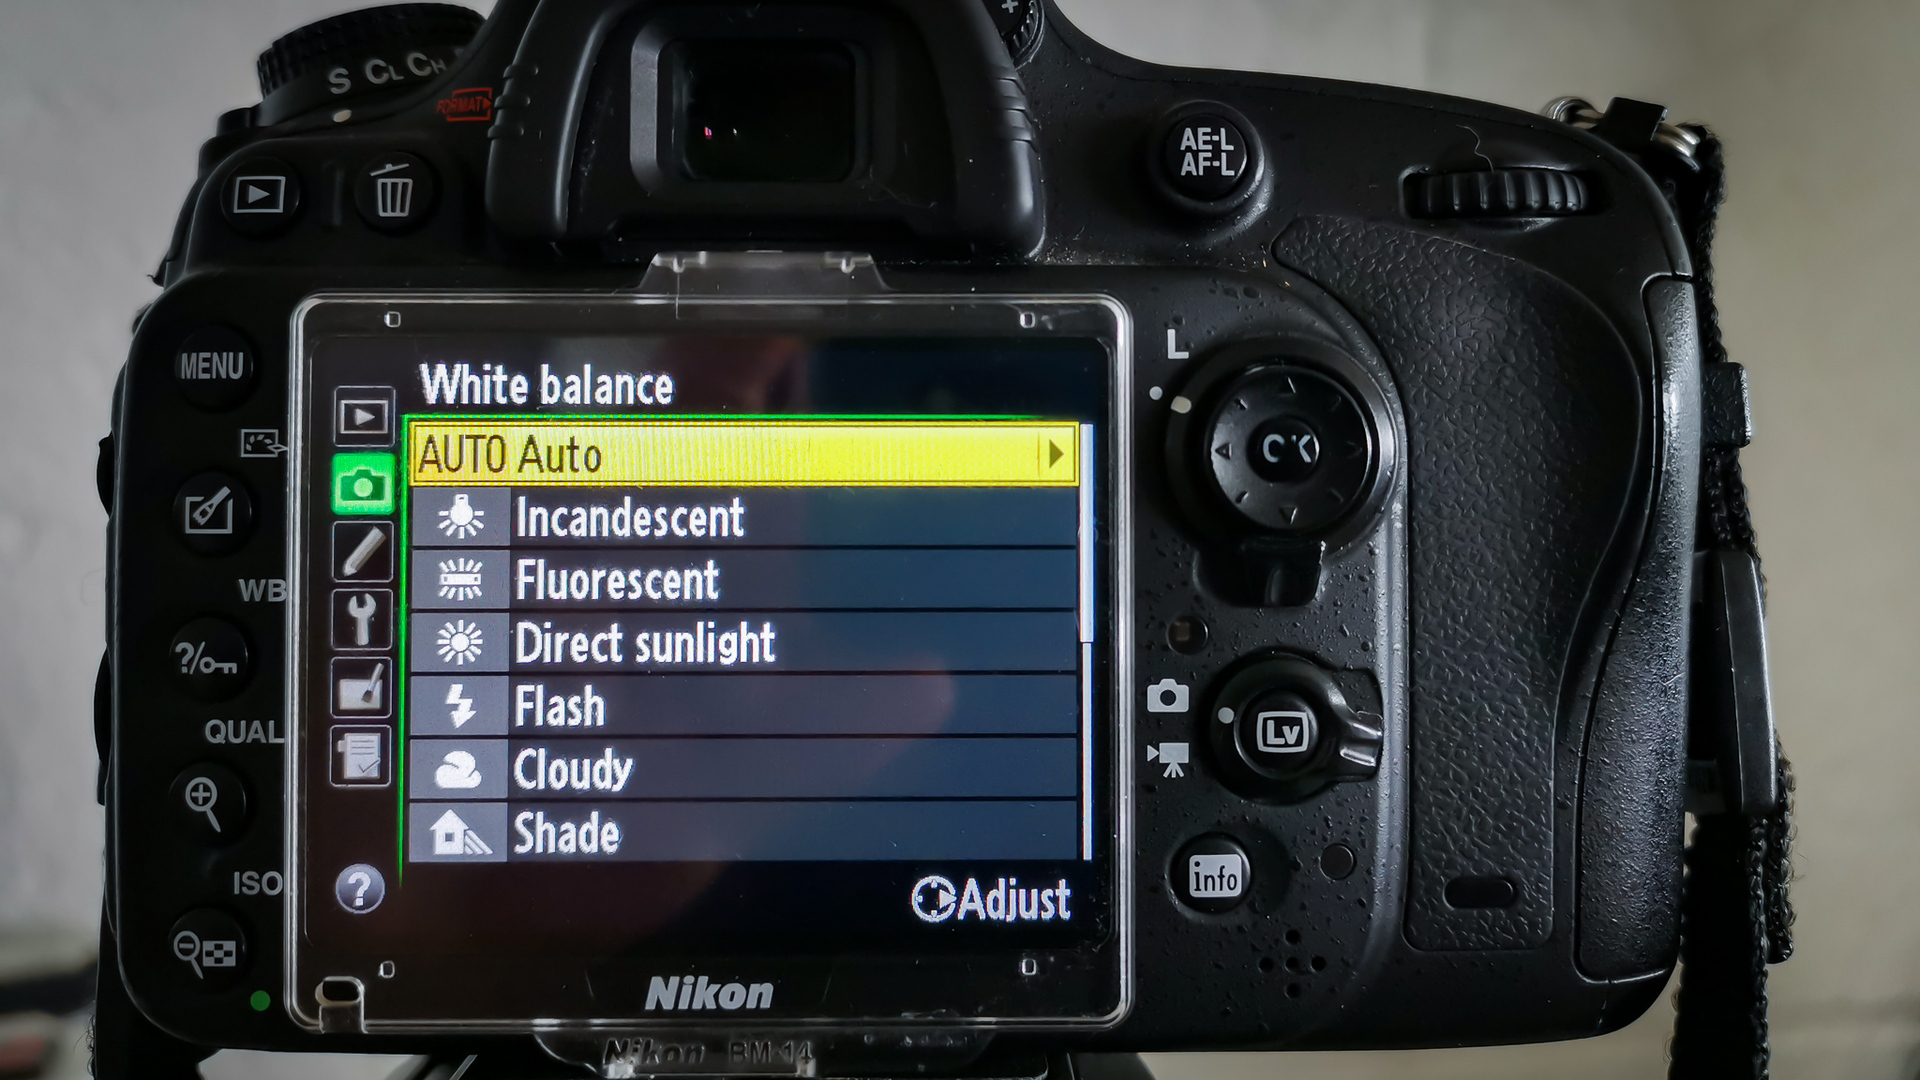 Camera white balance settings on Nikon D610